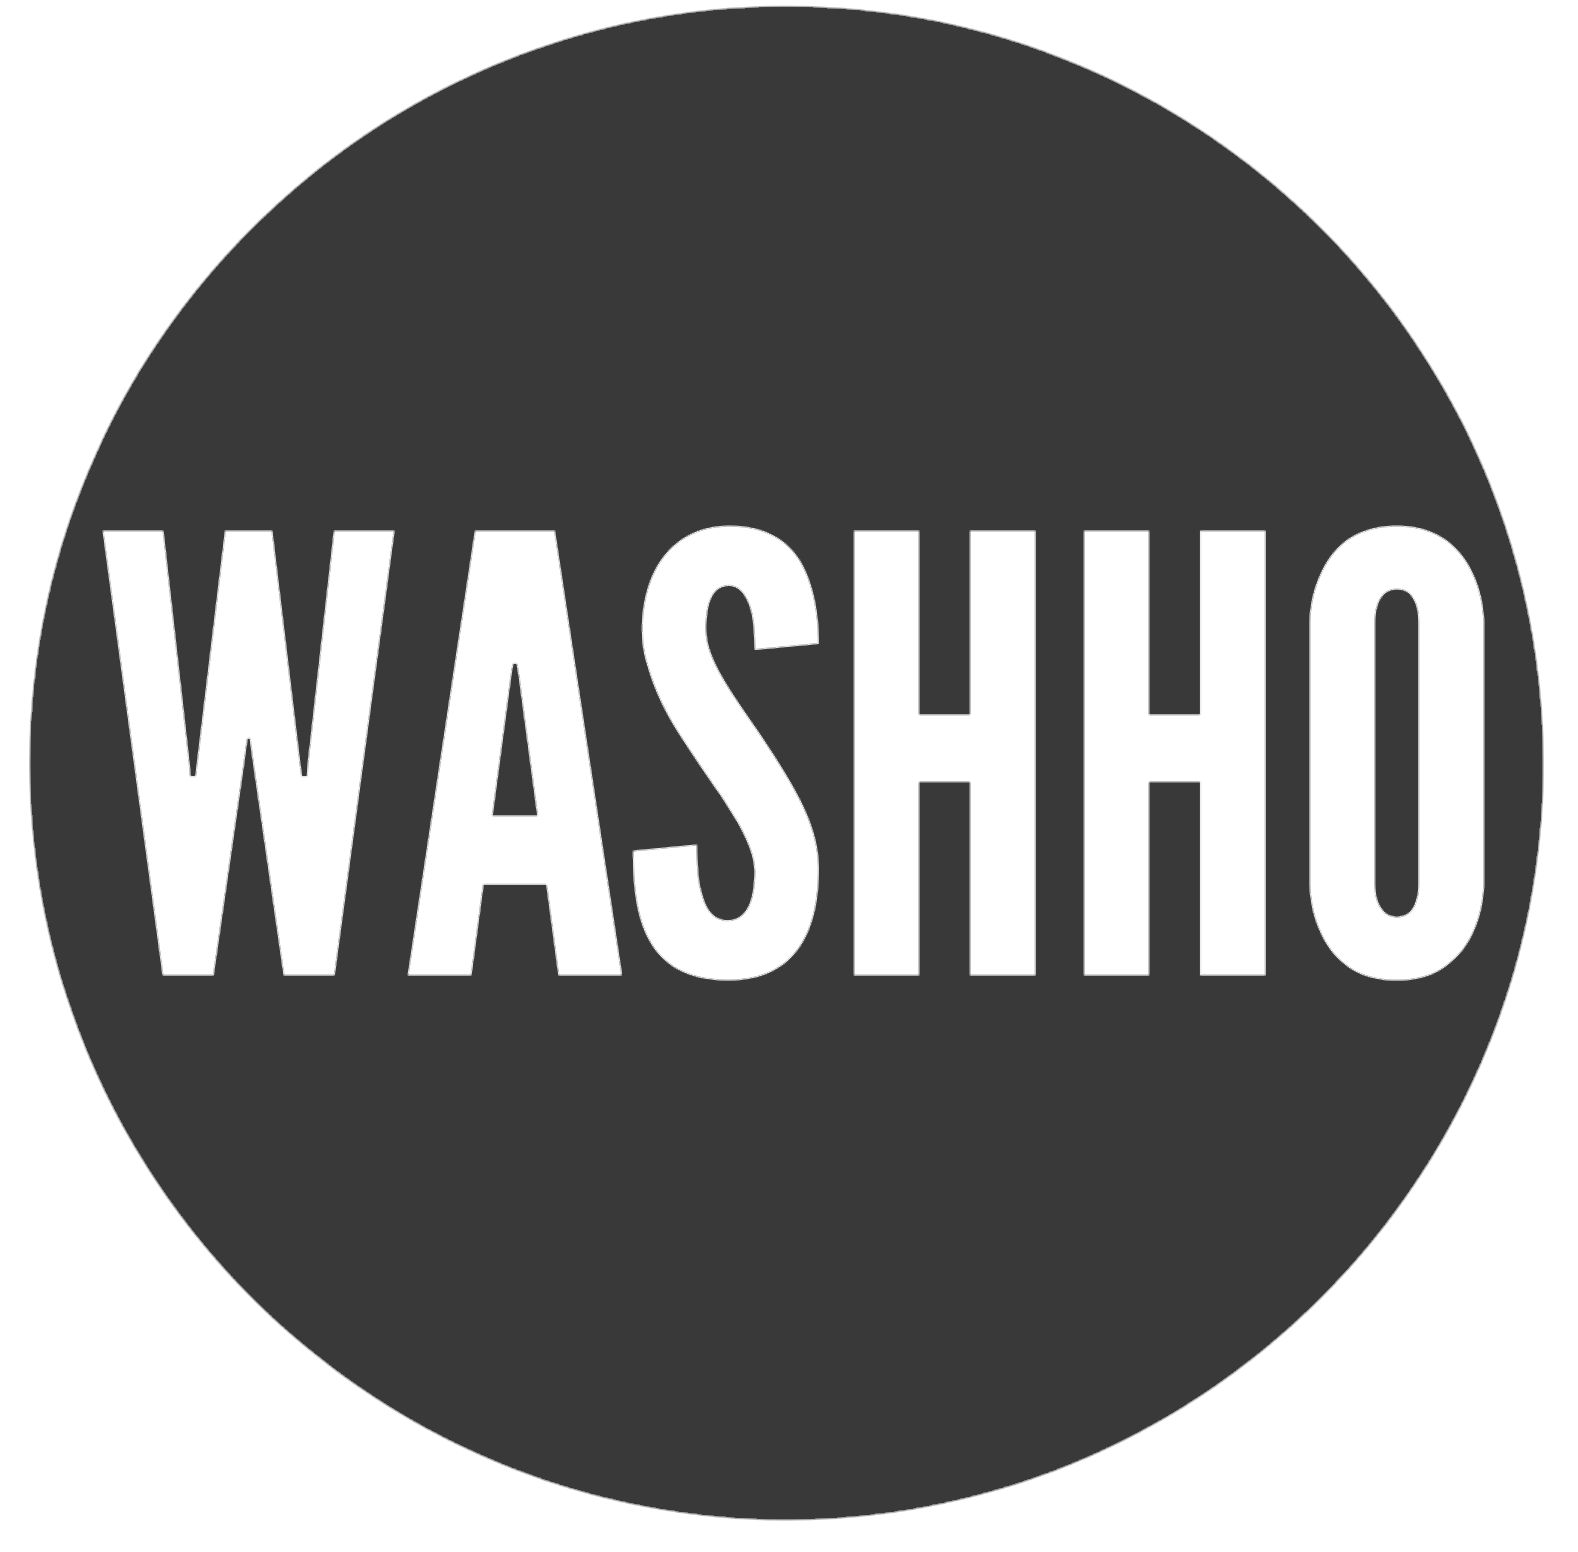 Washho logo on fullscreen navigation